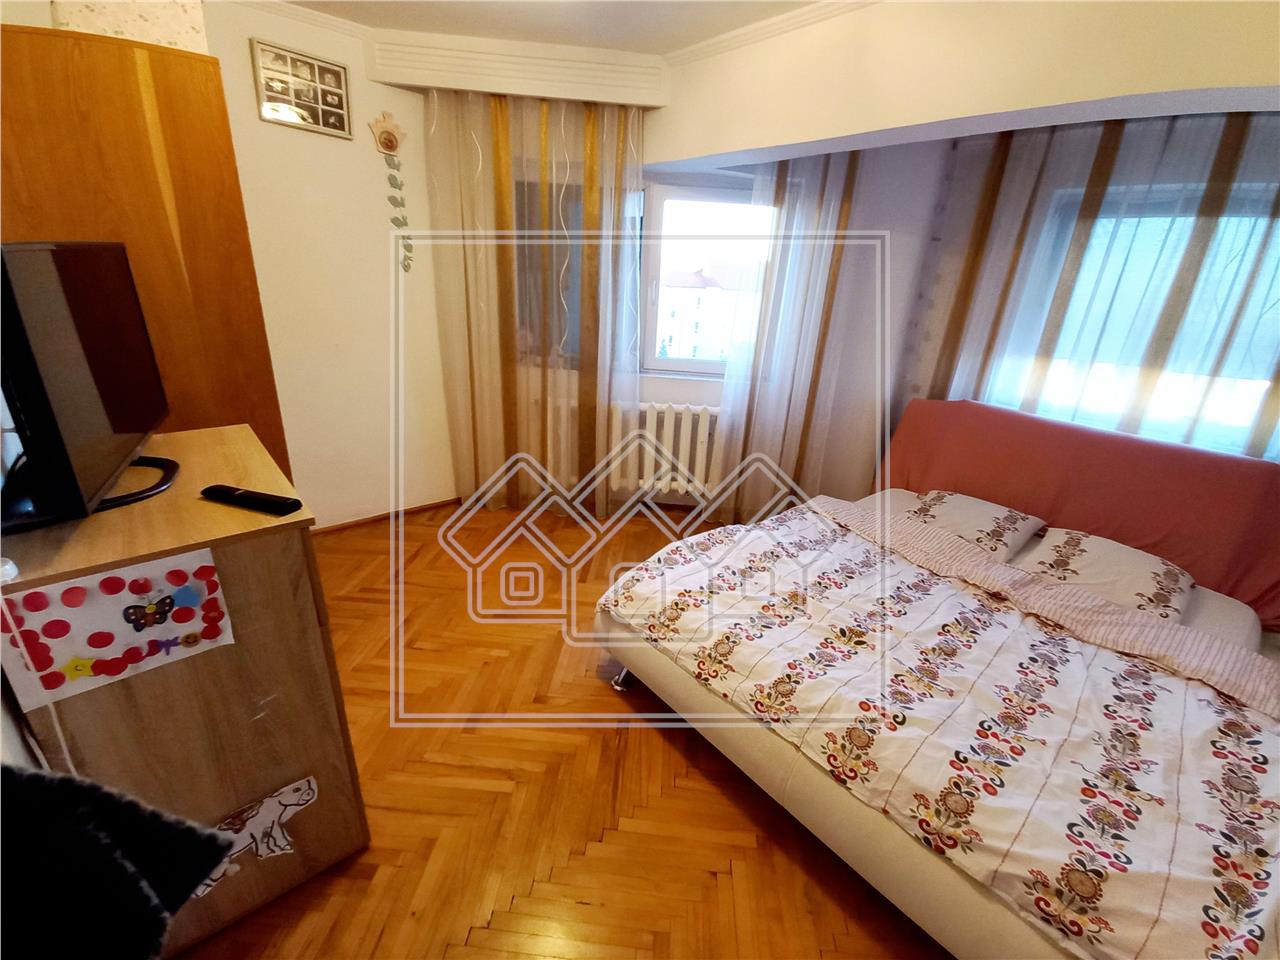 Apartament de vanzare in Alba Iulia - 3 camere - zona centrala